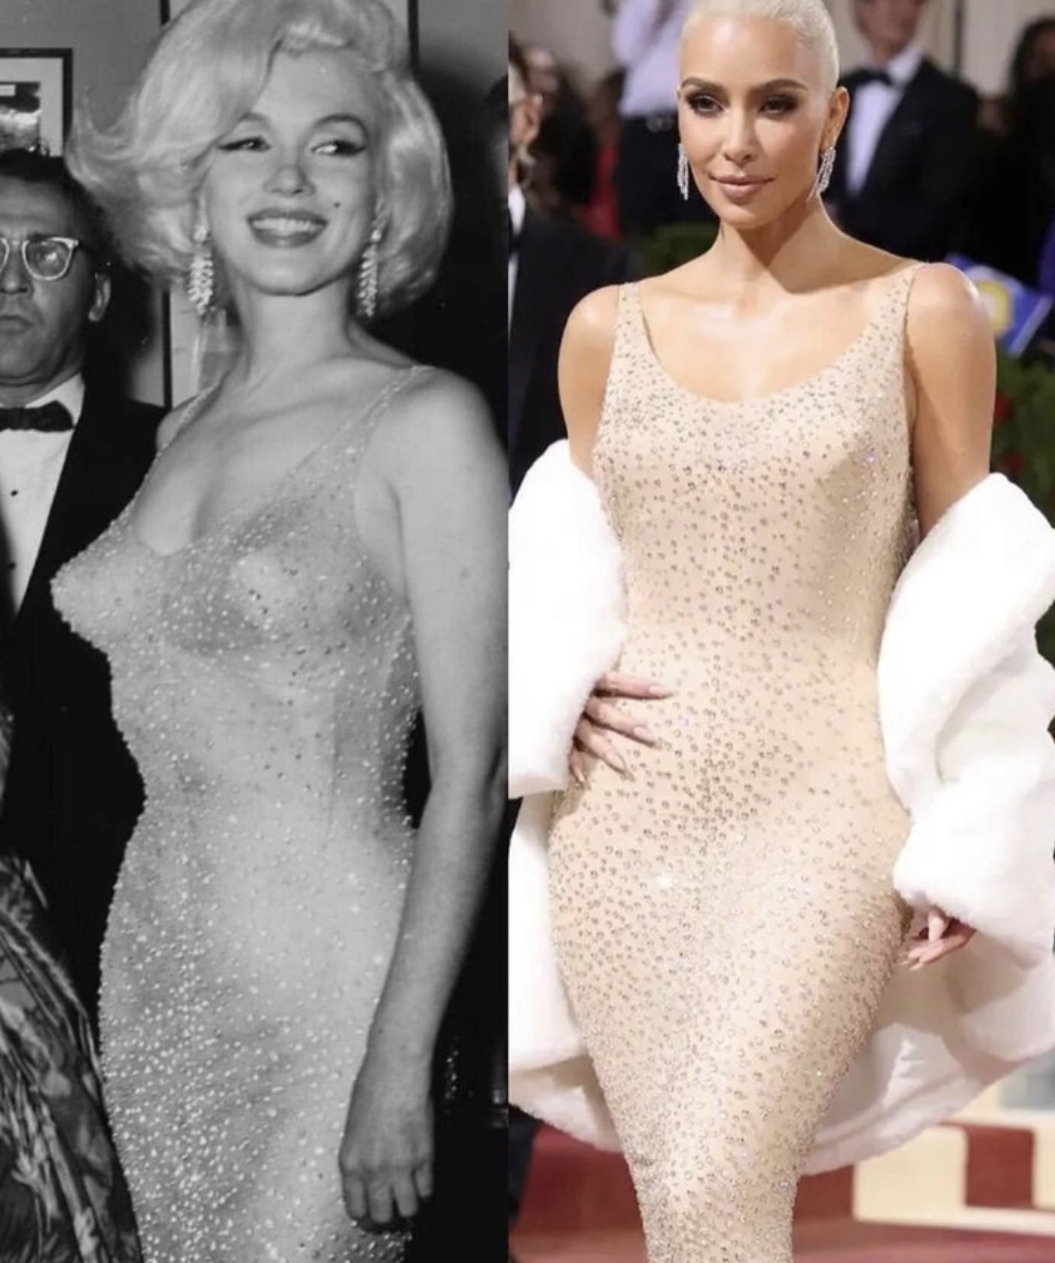 После появления в легендарном платье, Ким Кардашьян получила навсегда частичку Монро